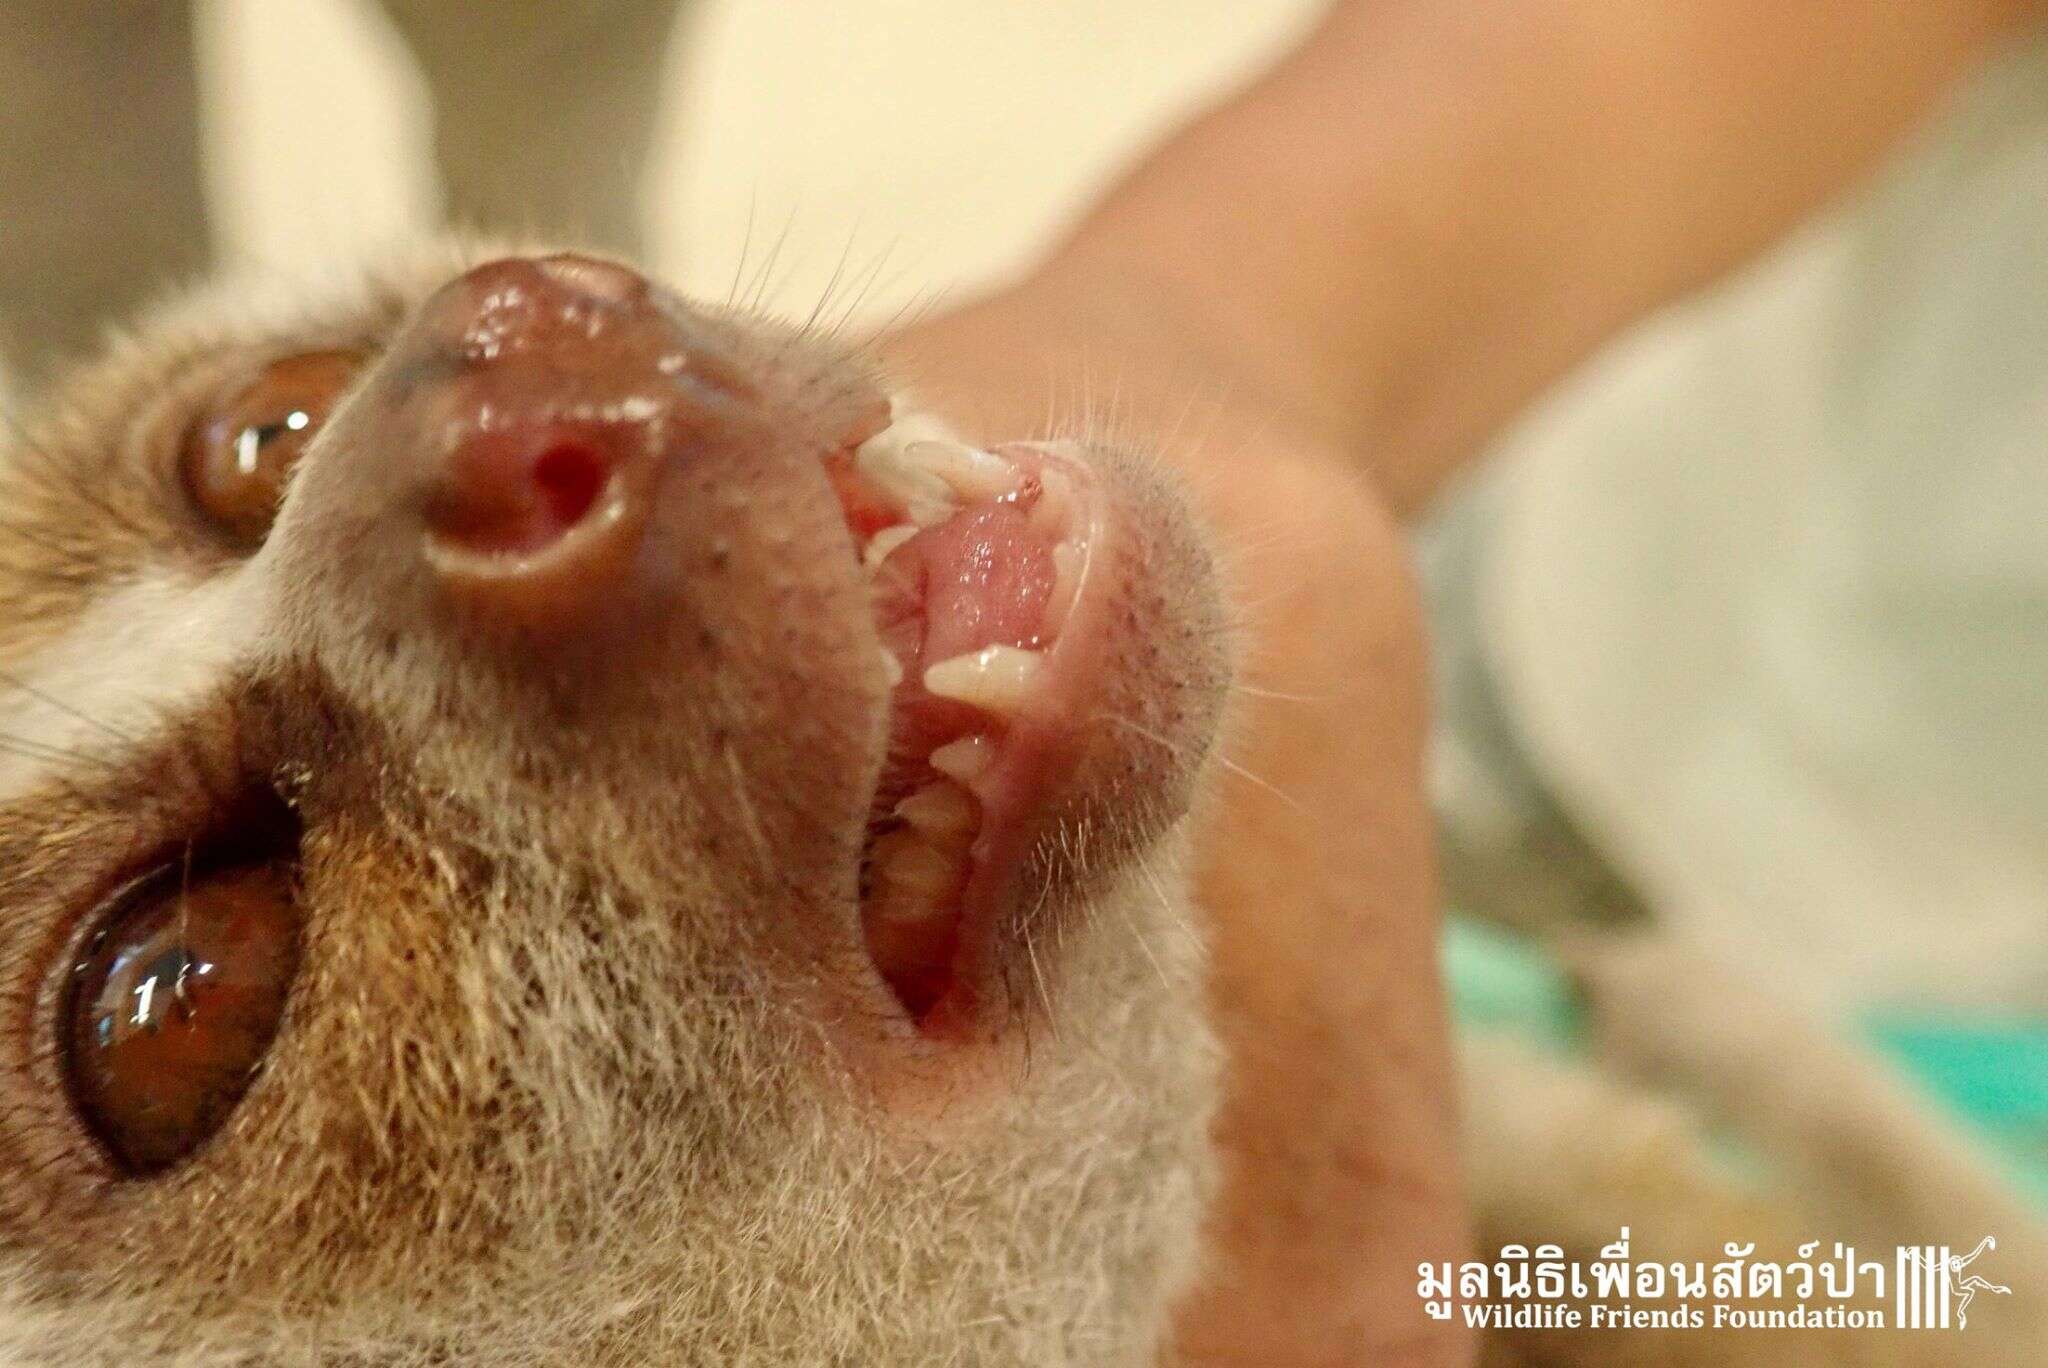 Wild slow loris found in Thailand man's shower